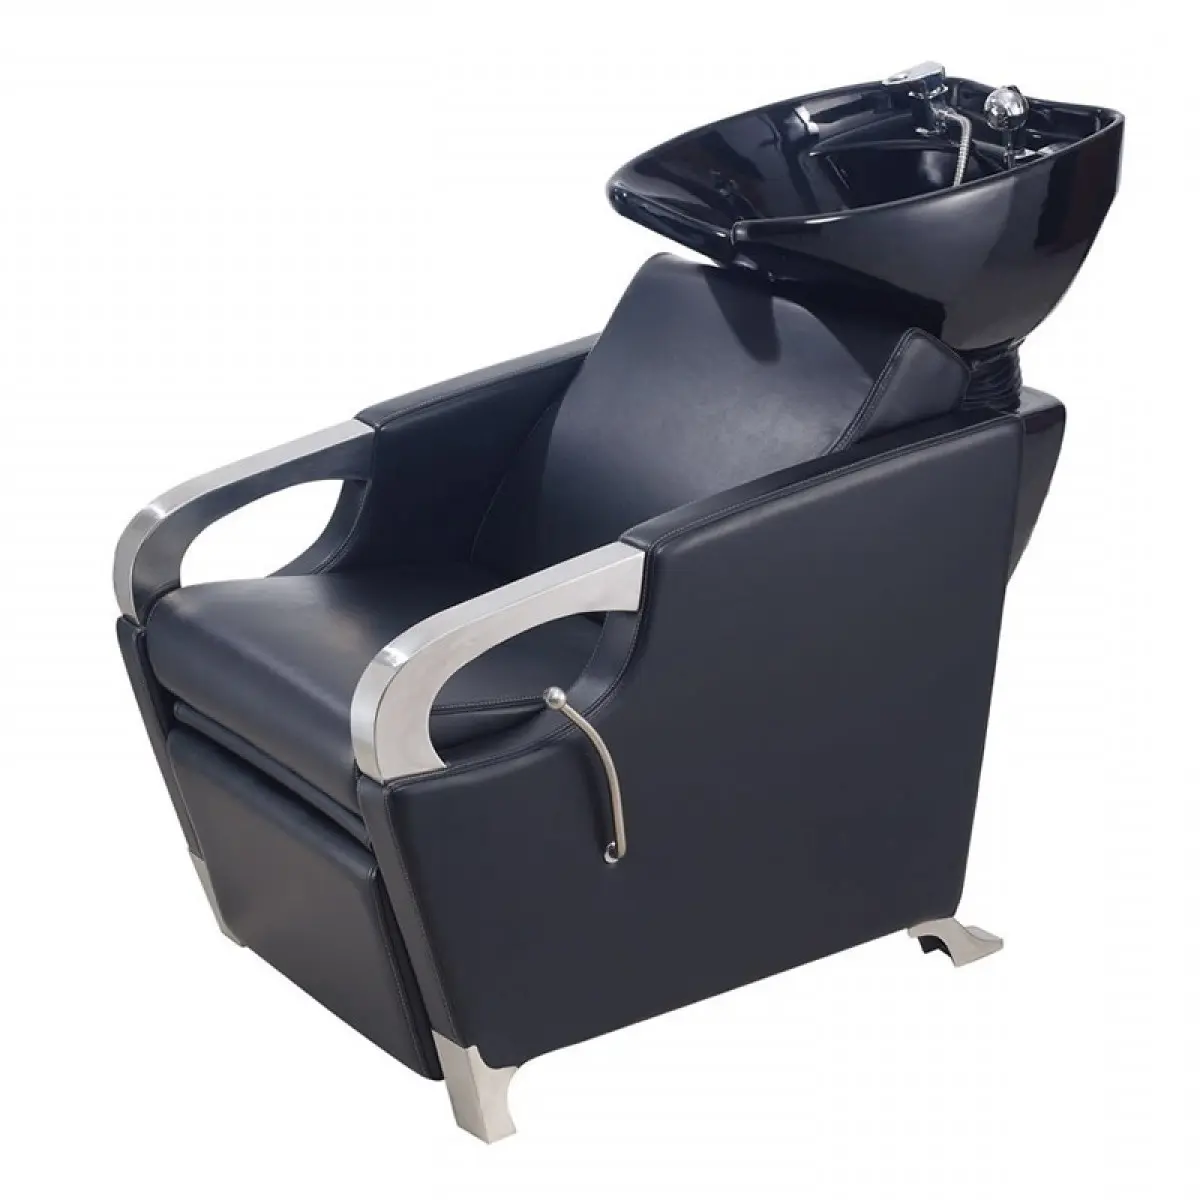 Klassischer Shampoo Stuhl New Style Haarschnitt Grauer Rücken Wasch stuhl Elektrischer Shampoo Stuhl Mit Massage